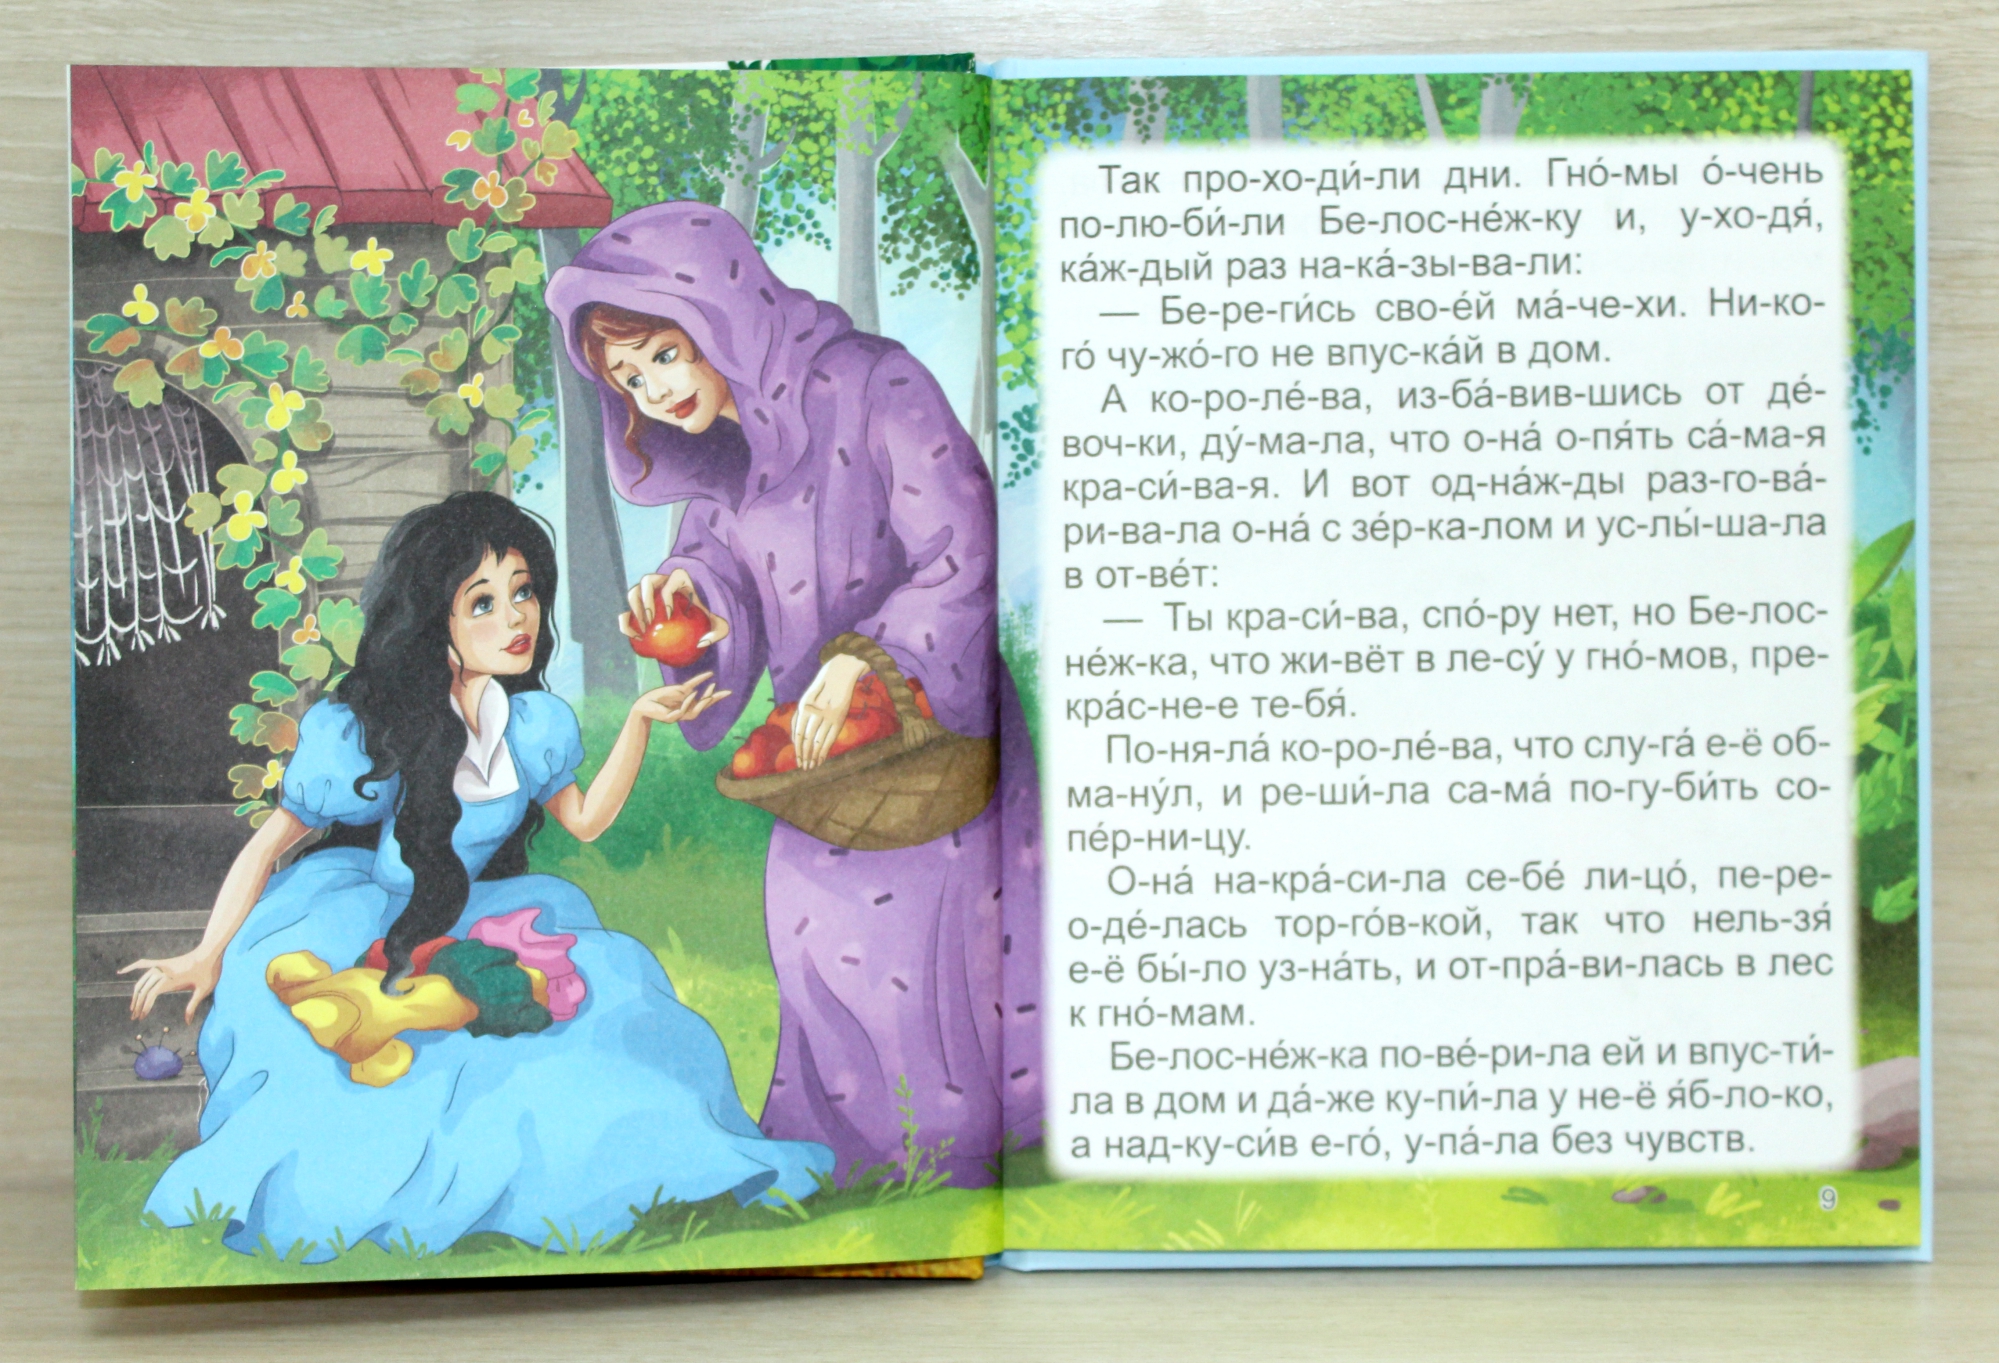 Сказки для детей читать 6 7 девочек